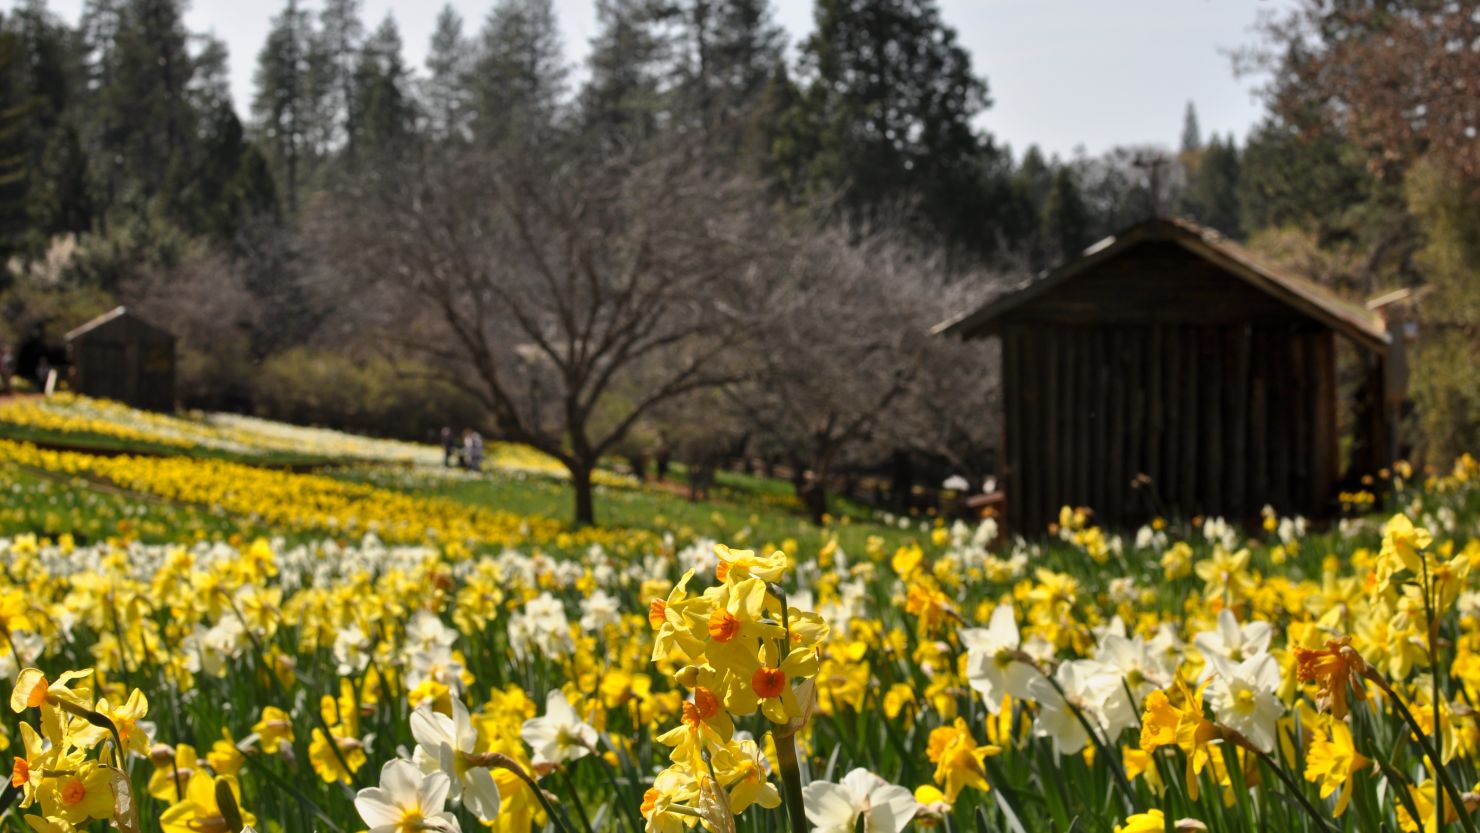 Daffodil Hill tourist attraction in California